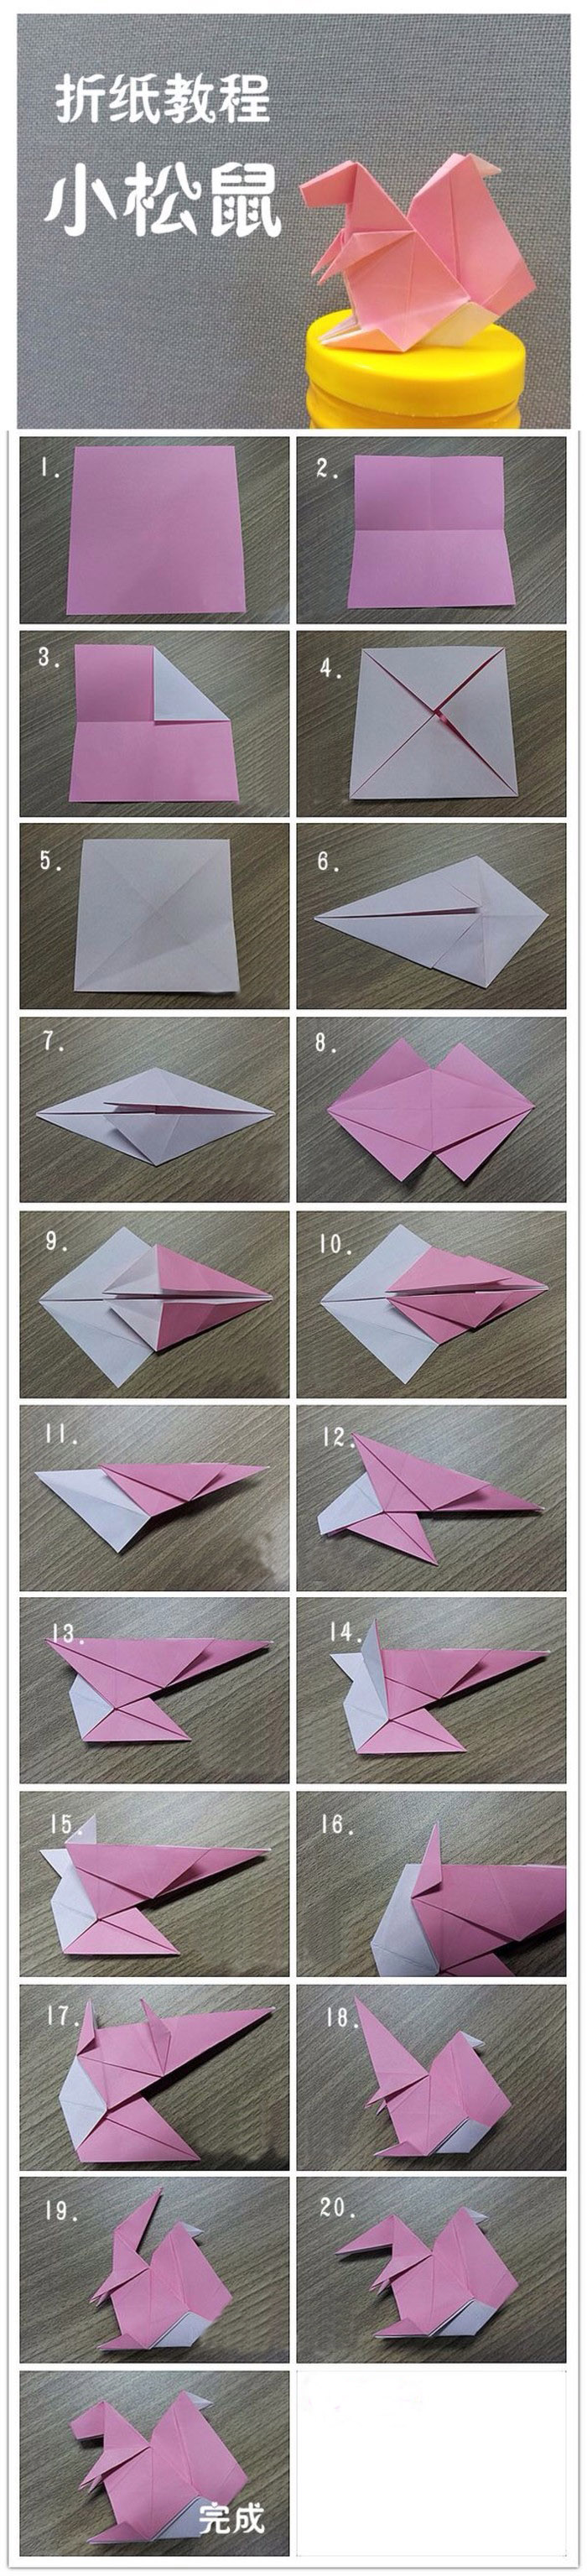 小松鼠折纸手工折纸图片教程